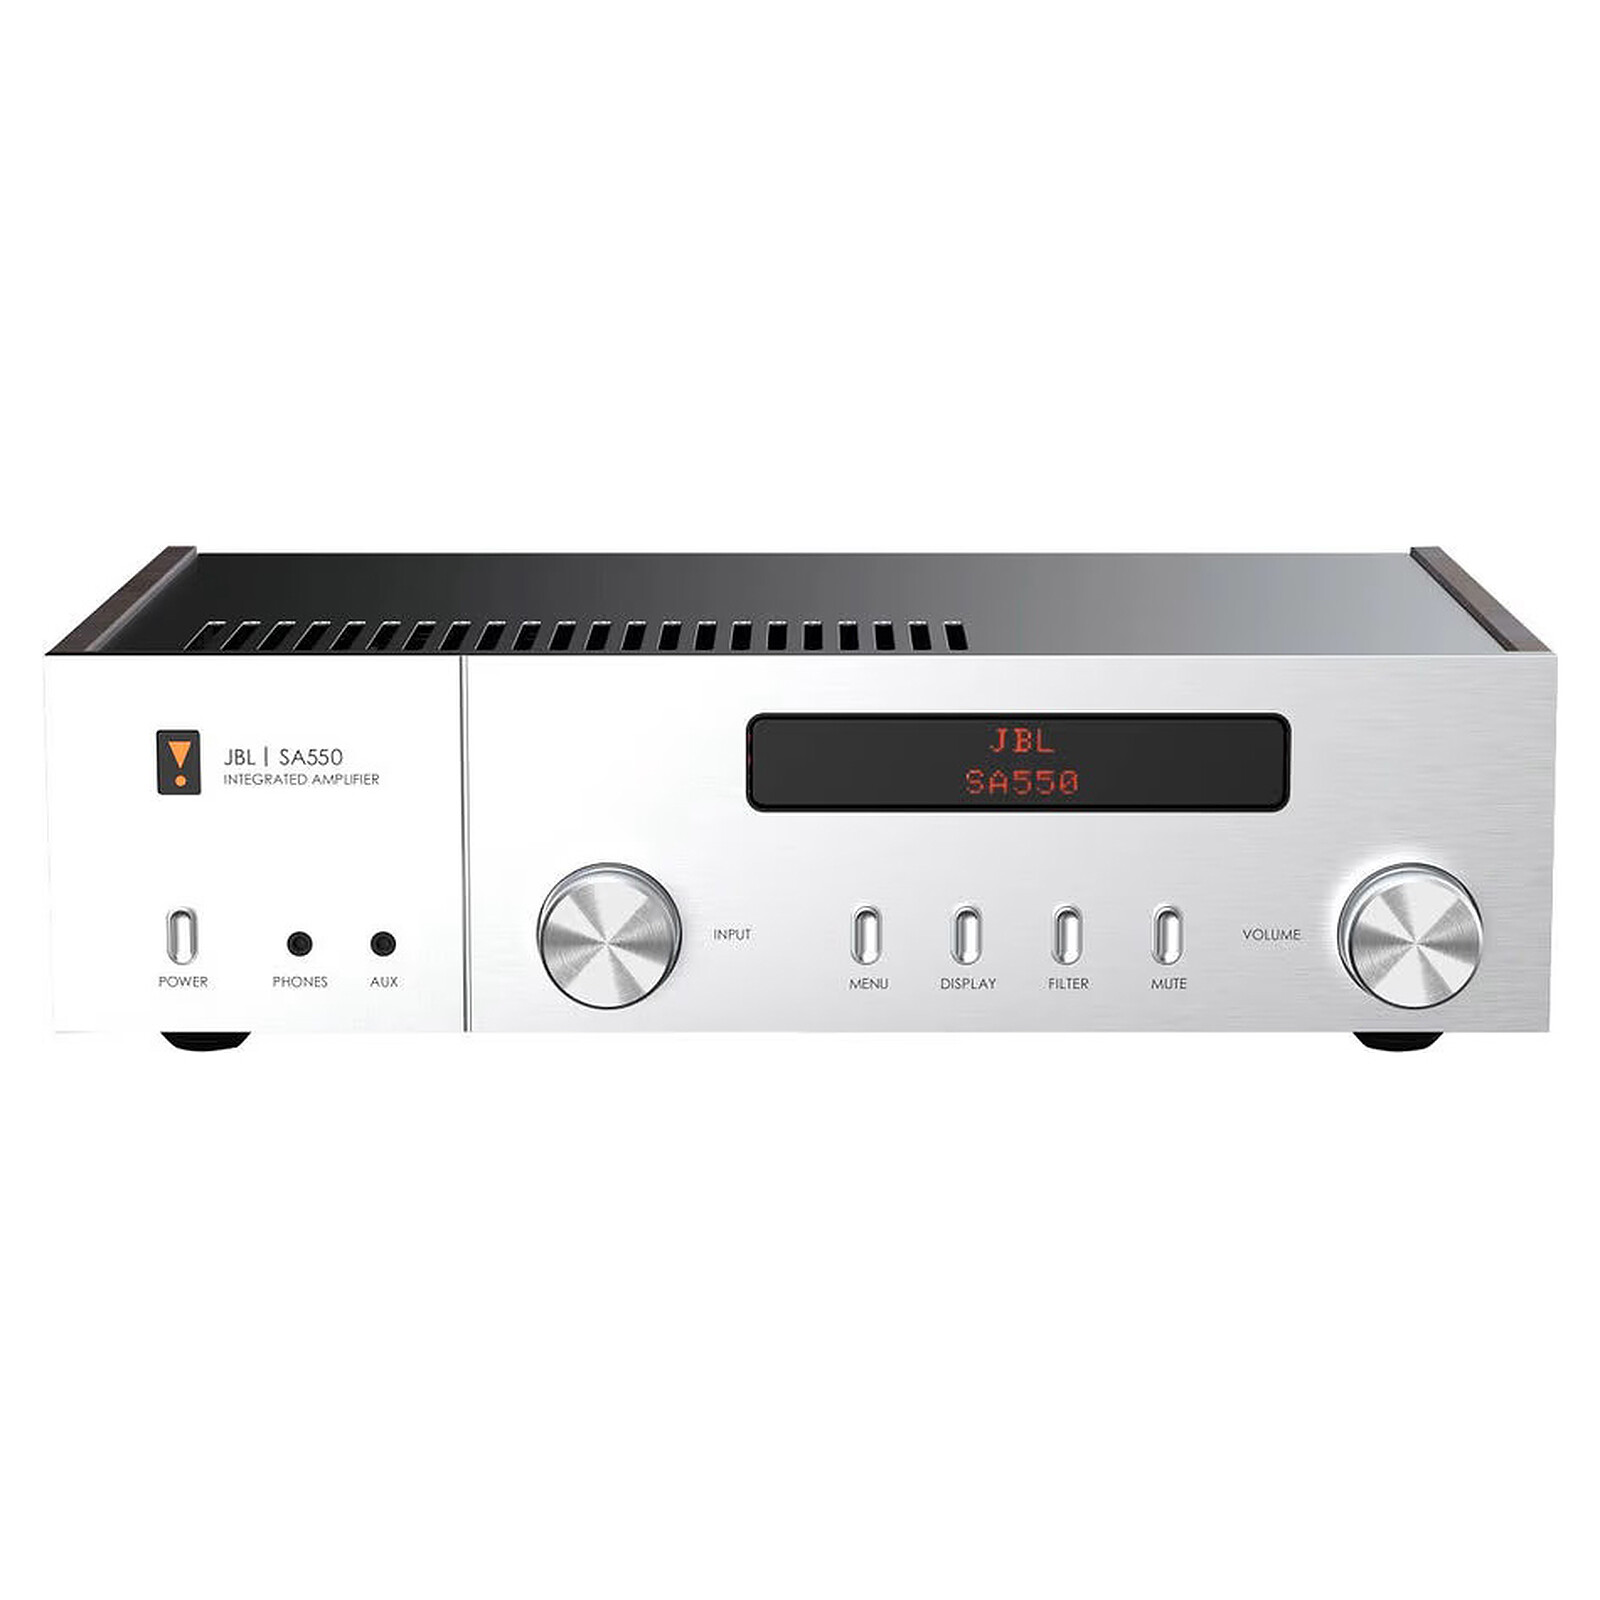 Etablering økse Skoleuddannelse JBL SA550 Classic - Home audio amplifier JBL on LDLC